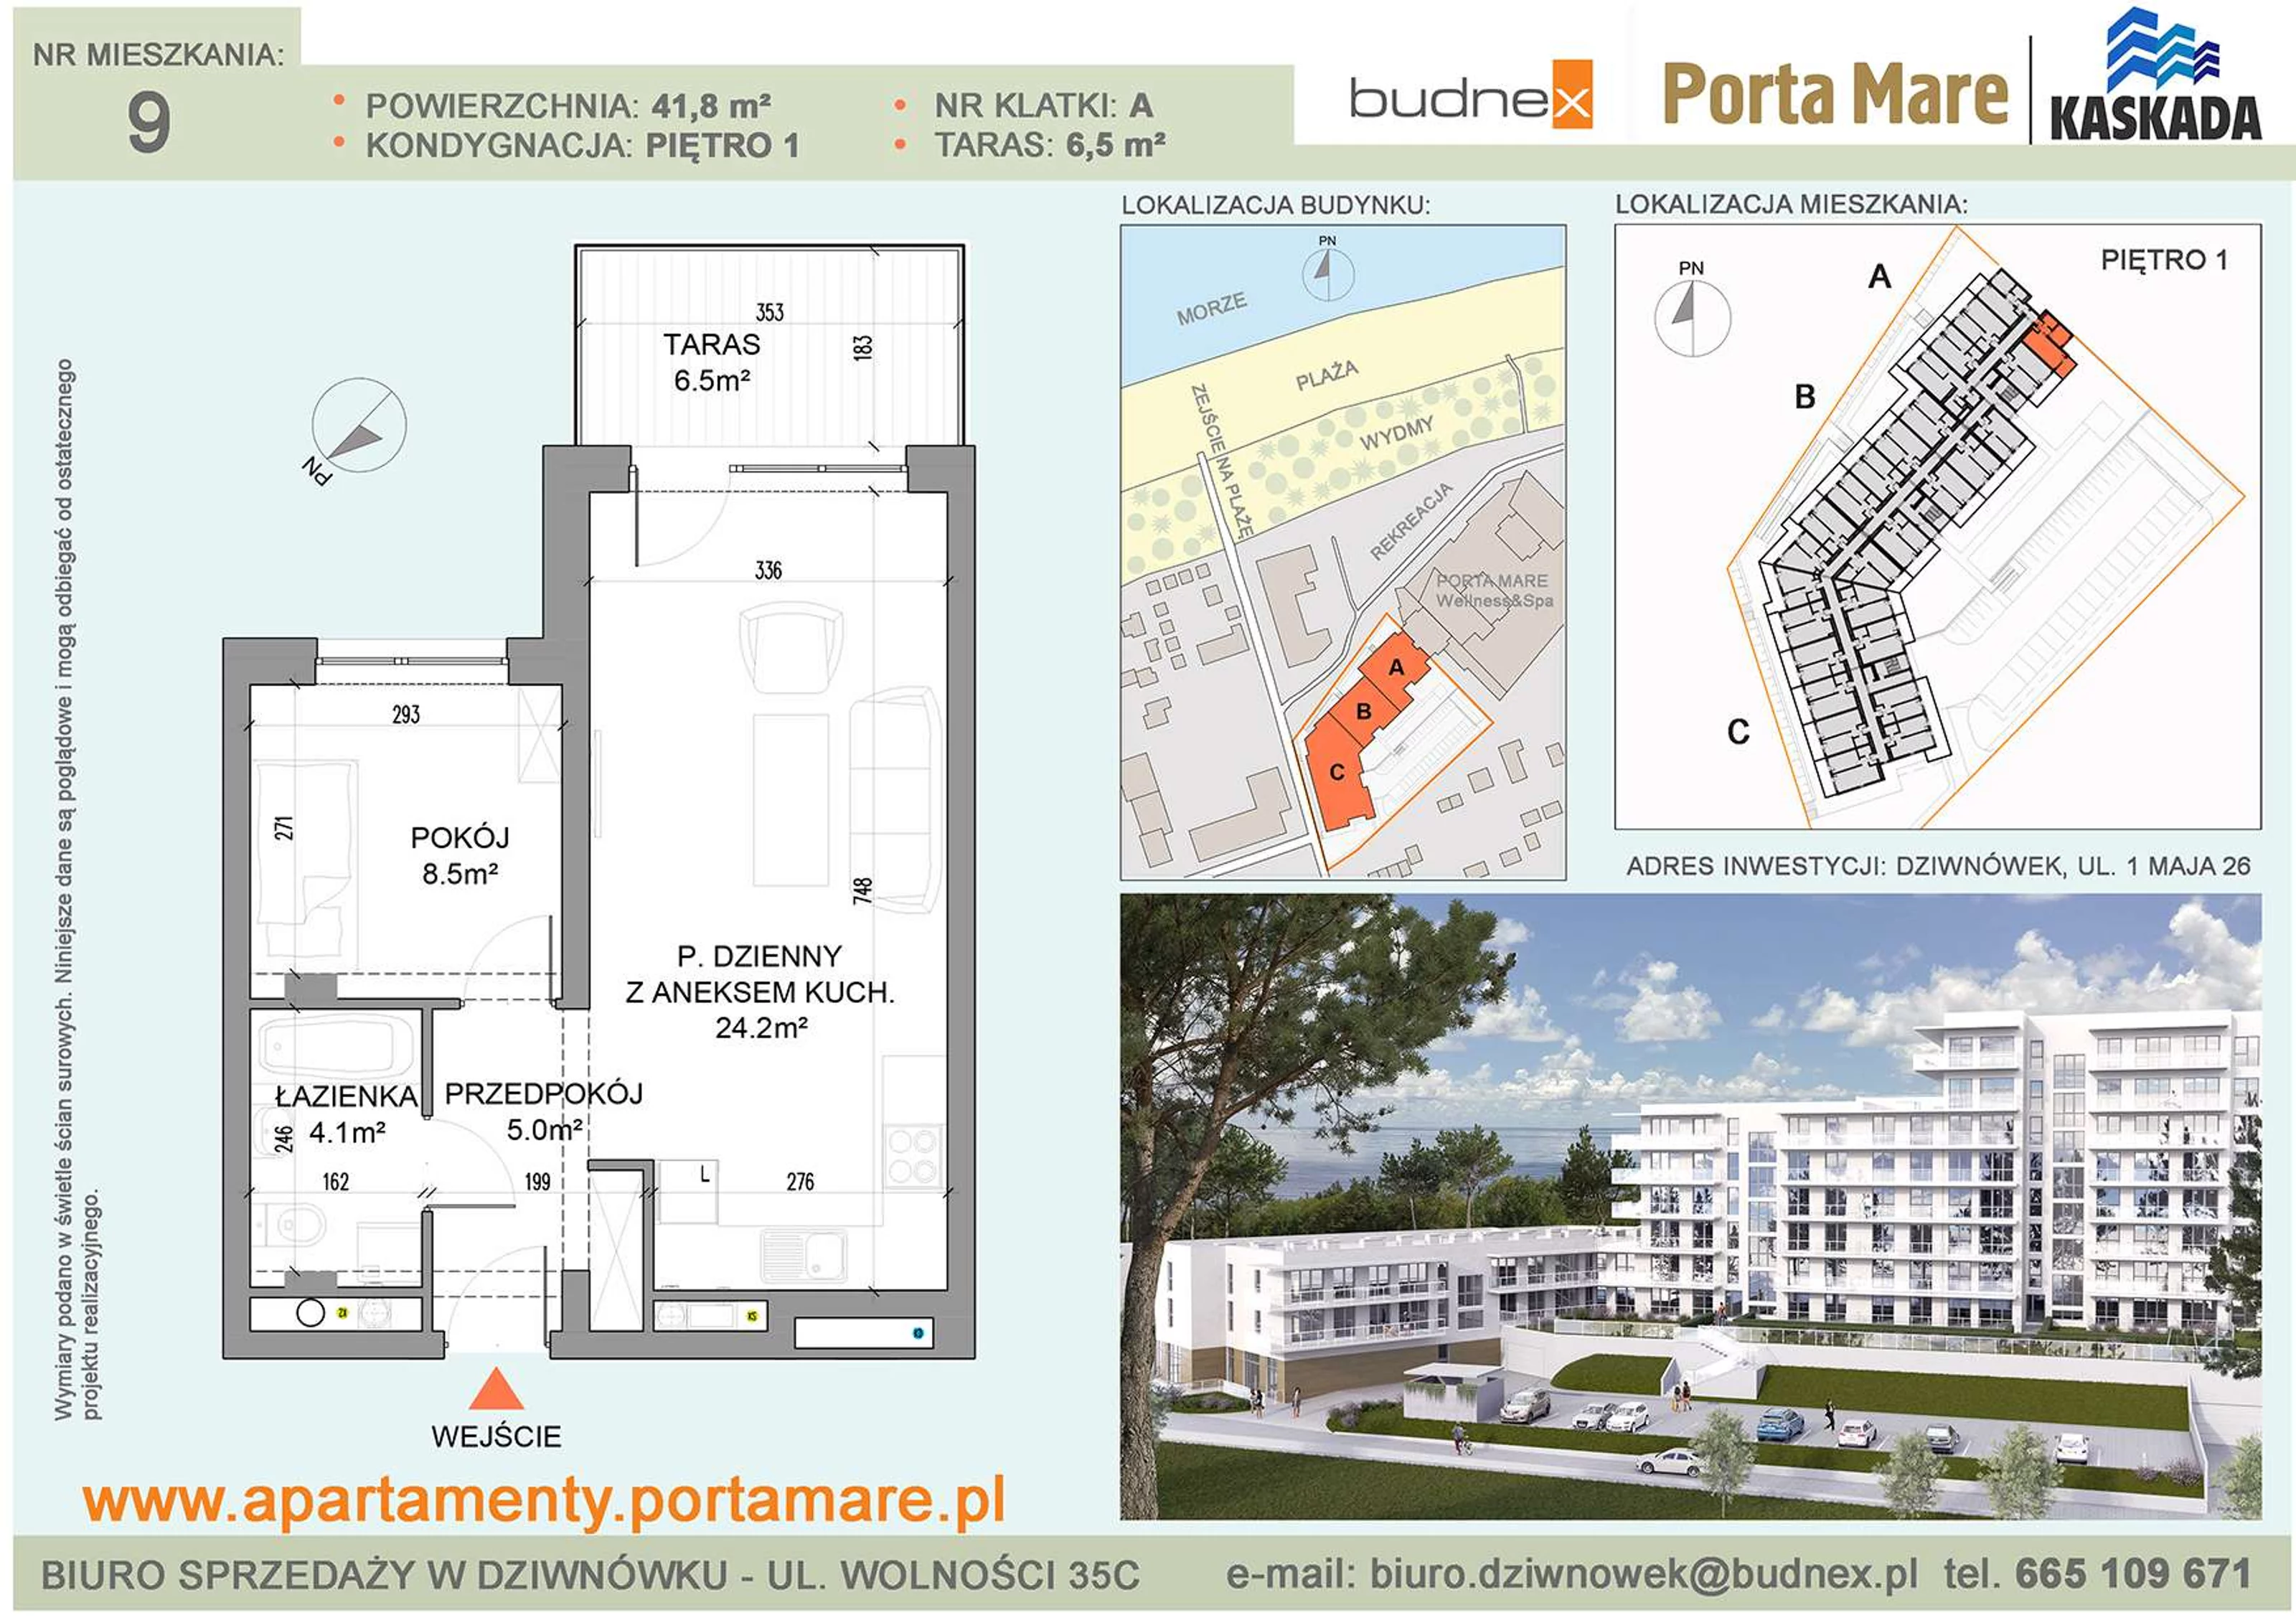 Mieszkanie 41,80 m², piętro 1, oferta nr A/M09, Porta Mare Kaskada, Dziwnówek, ul. 1 Maja 26